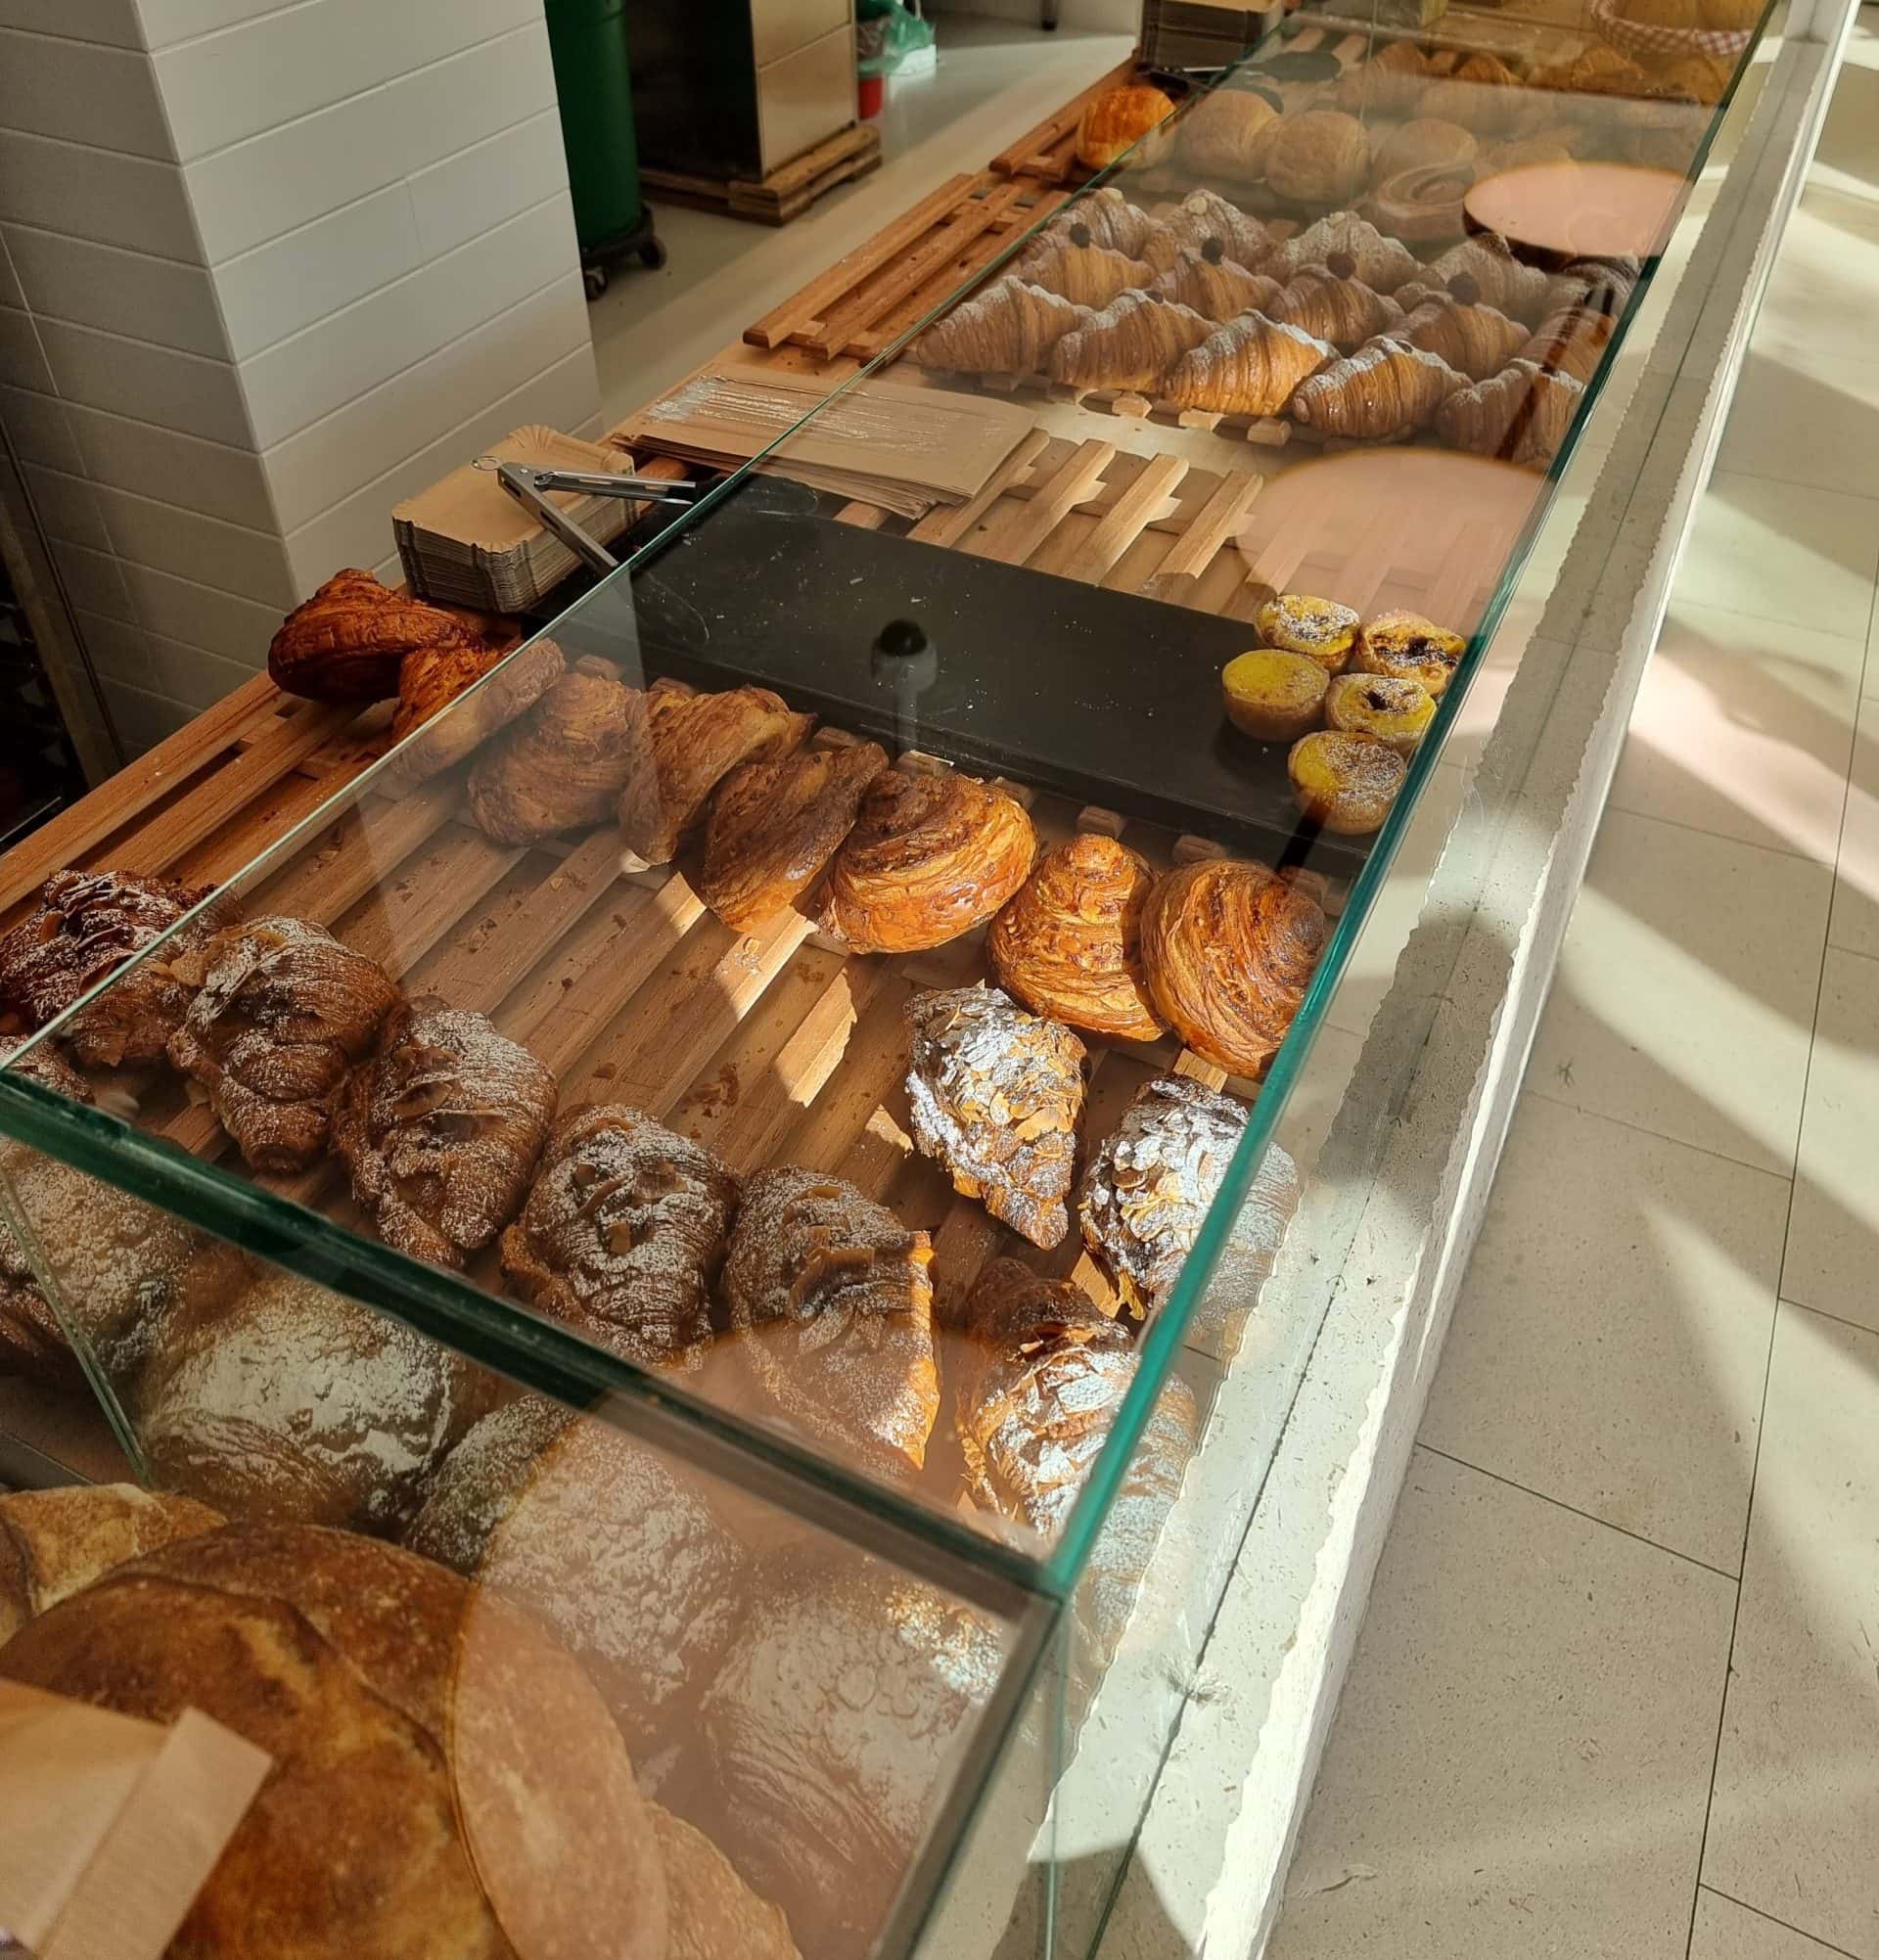 Remeselná pekáreň Kruh v Bratislave